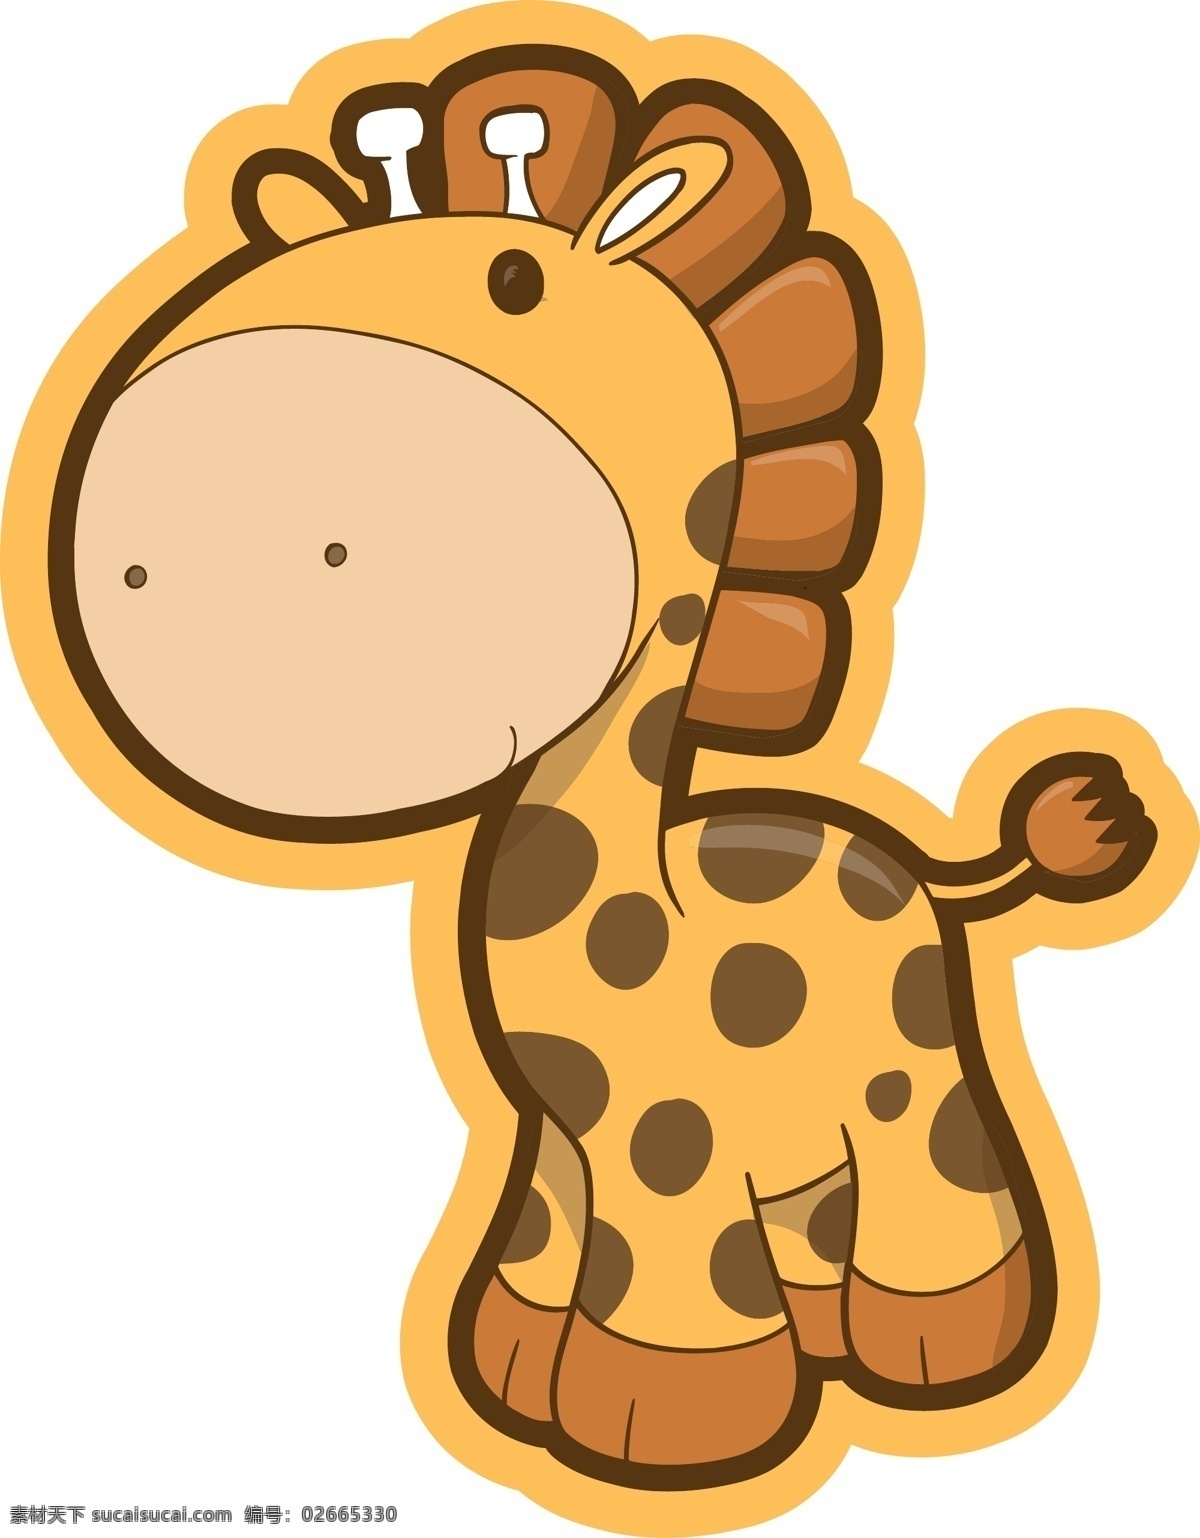 卡通 长颈鹿 q版 卡通长颈鹿 卡通形象 可爱 圆圆的 长颈鹿帖纸 矢量图 其他矢量图